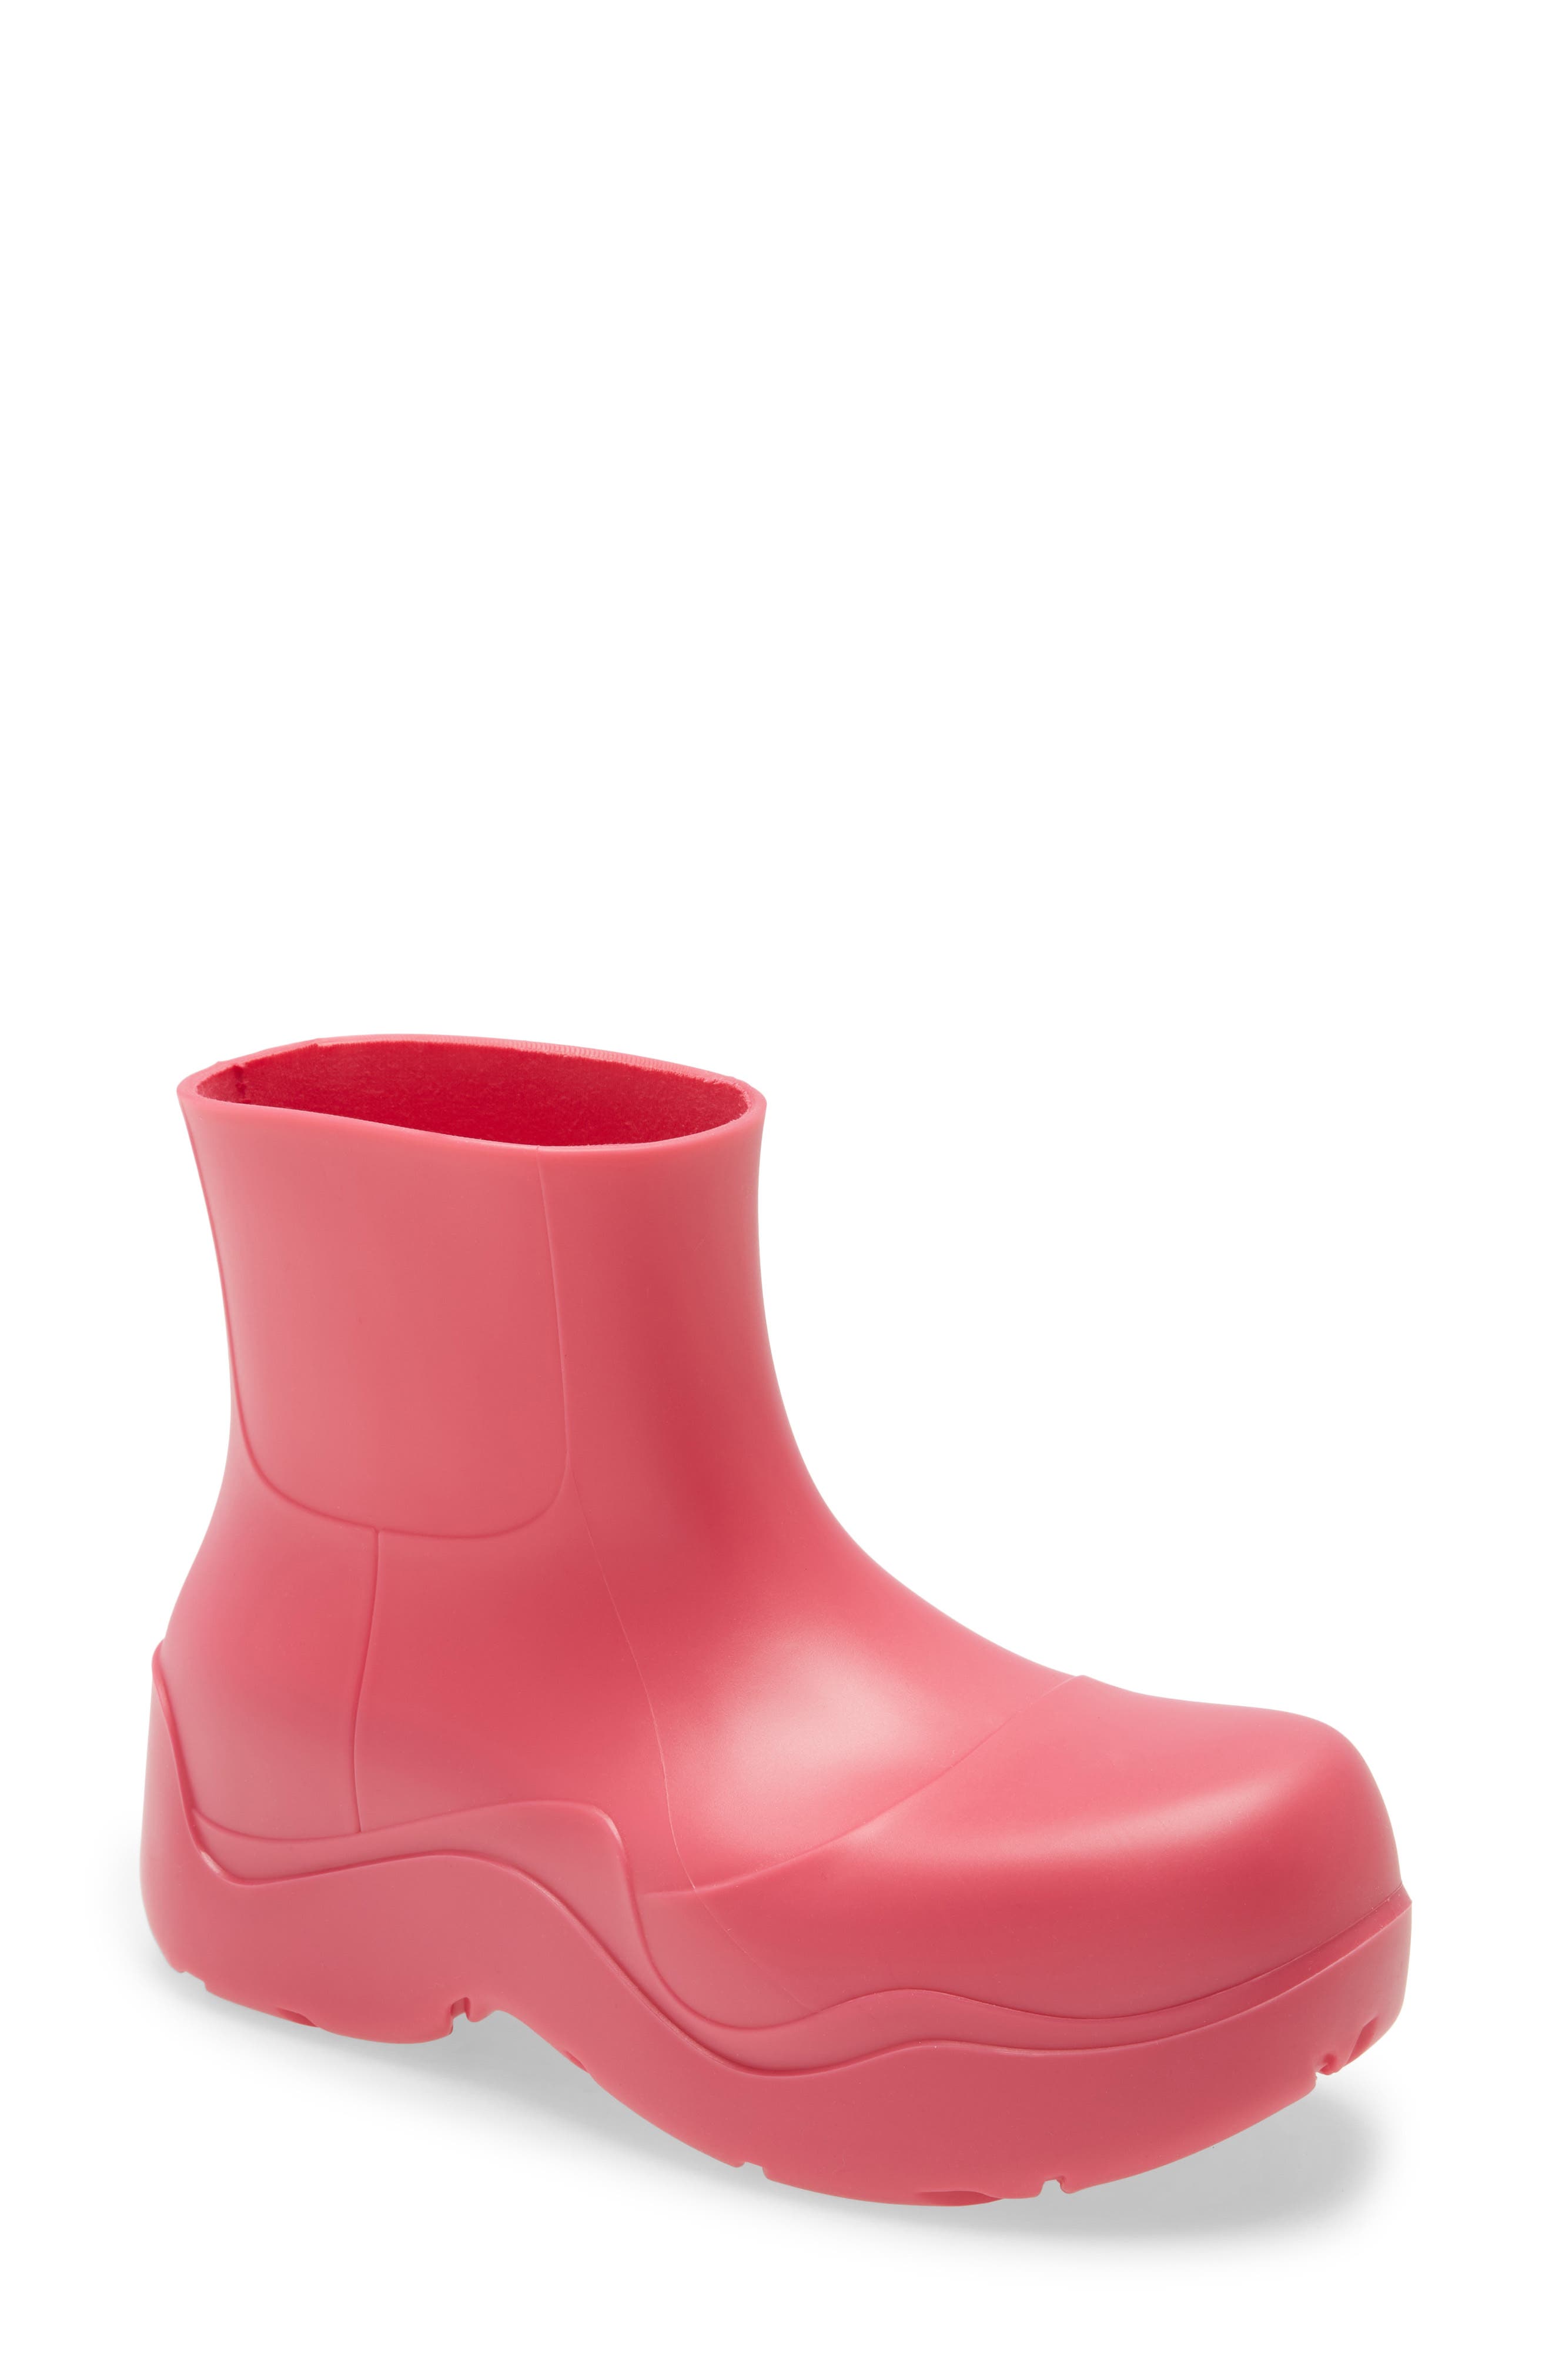 pink boots next